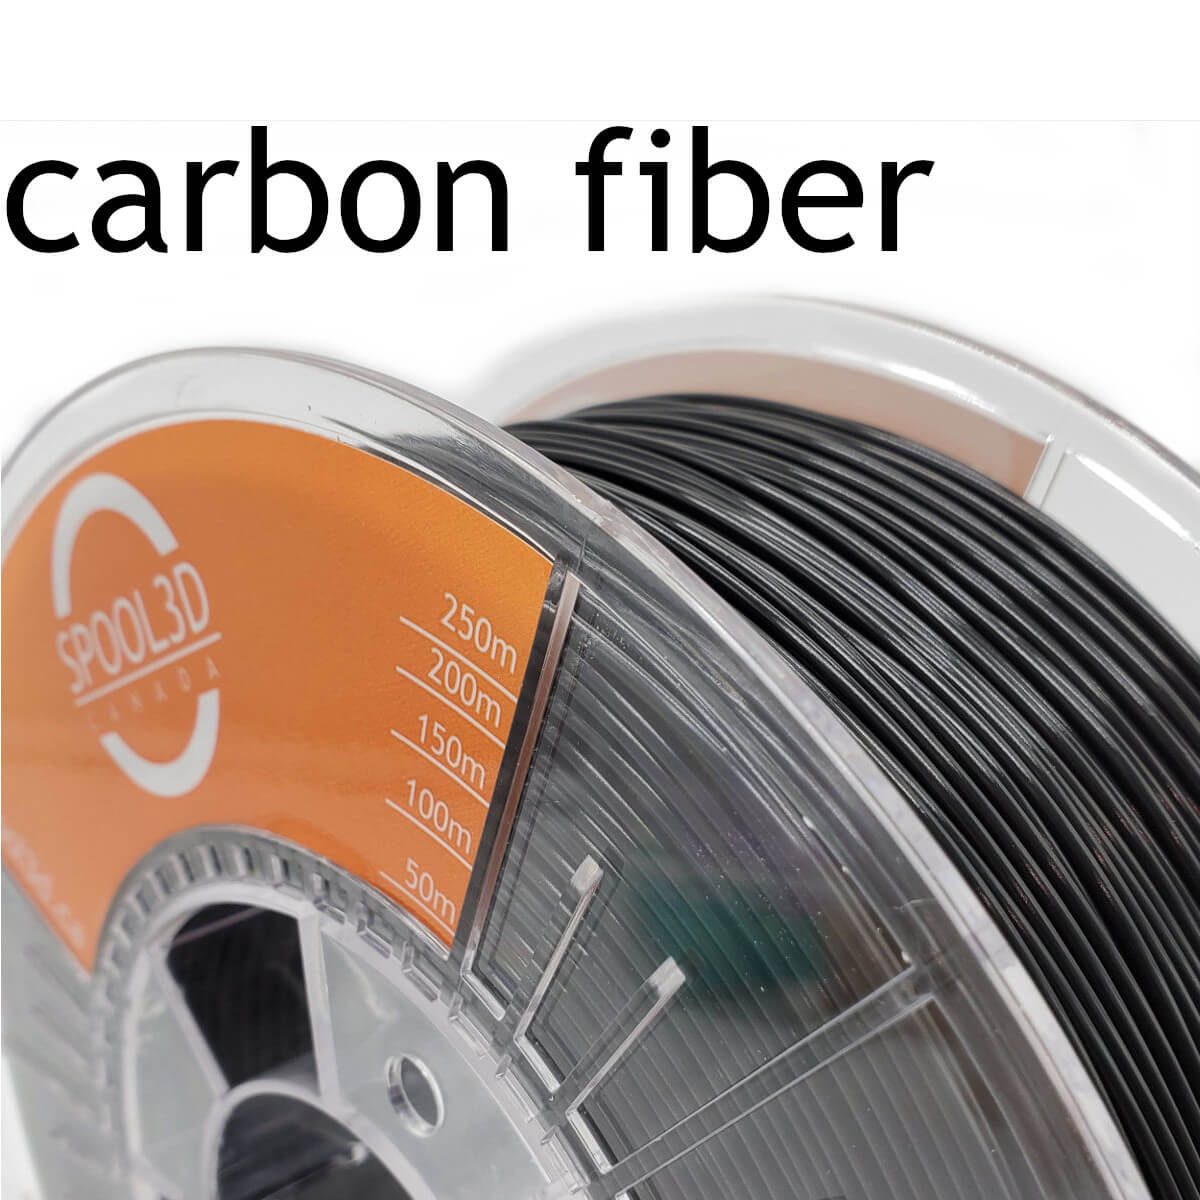 https://cdn11.bigcommerce.com/s-mm9wpa/images/stencil/original/products/2021/10986/3d-printer-filament-pla-1kg-black-carbon-fiber-1.75mm-1200x1200__82539.1694706052.jpg?c=2